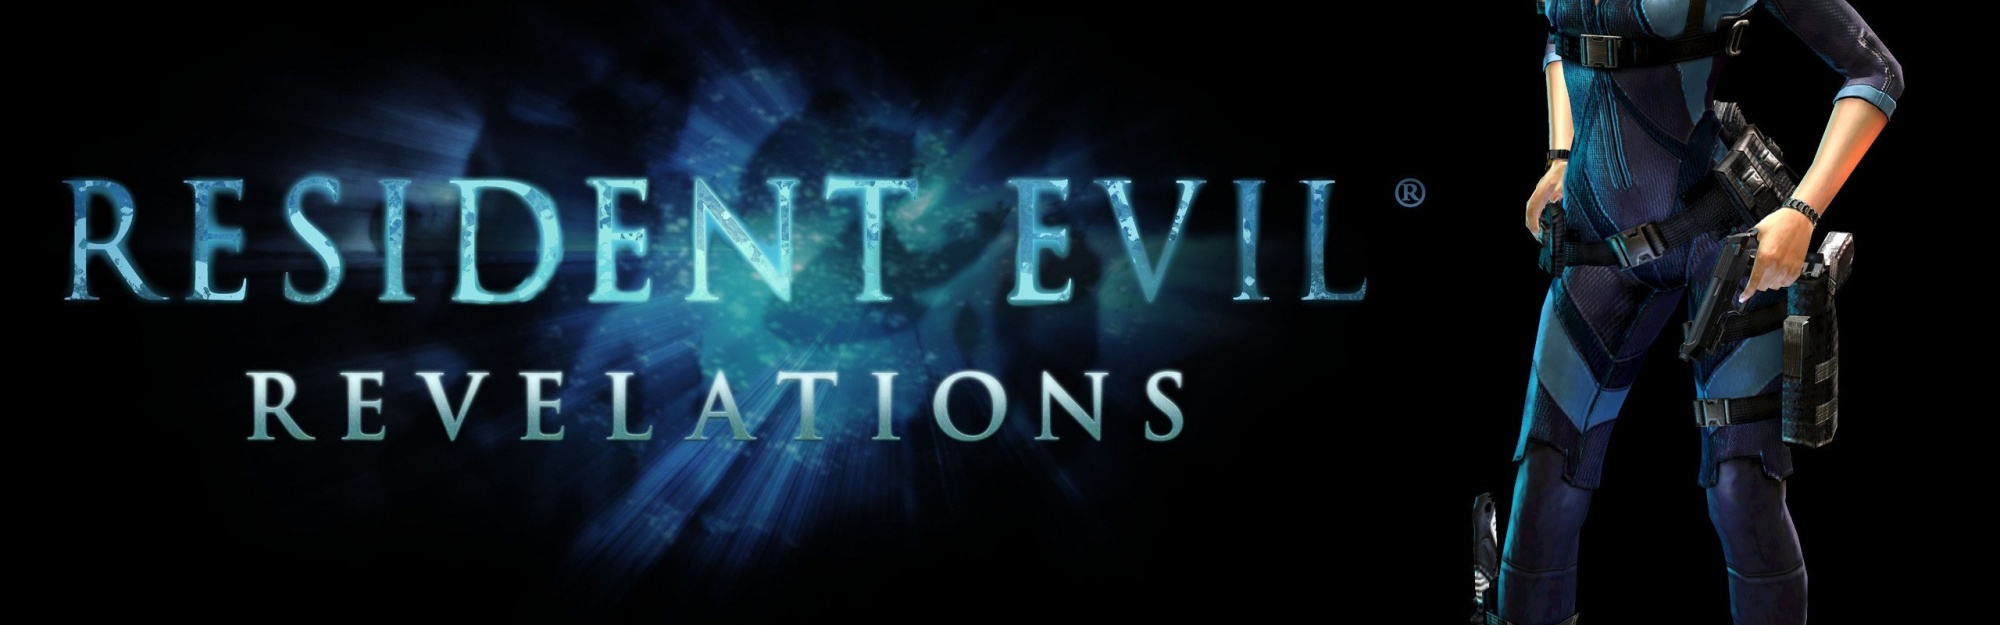 Jill Valentine Resident Evil Revelations